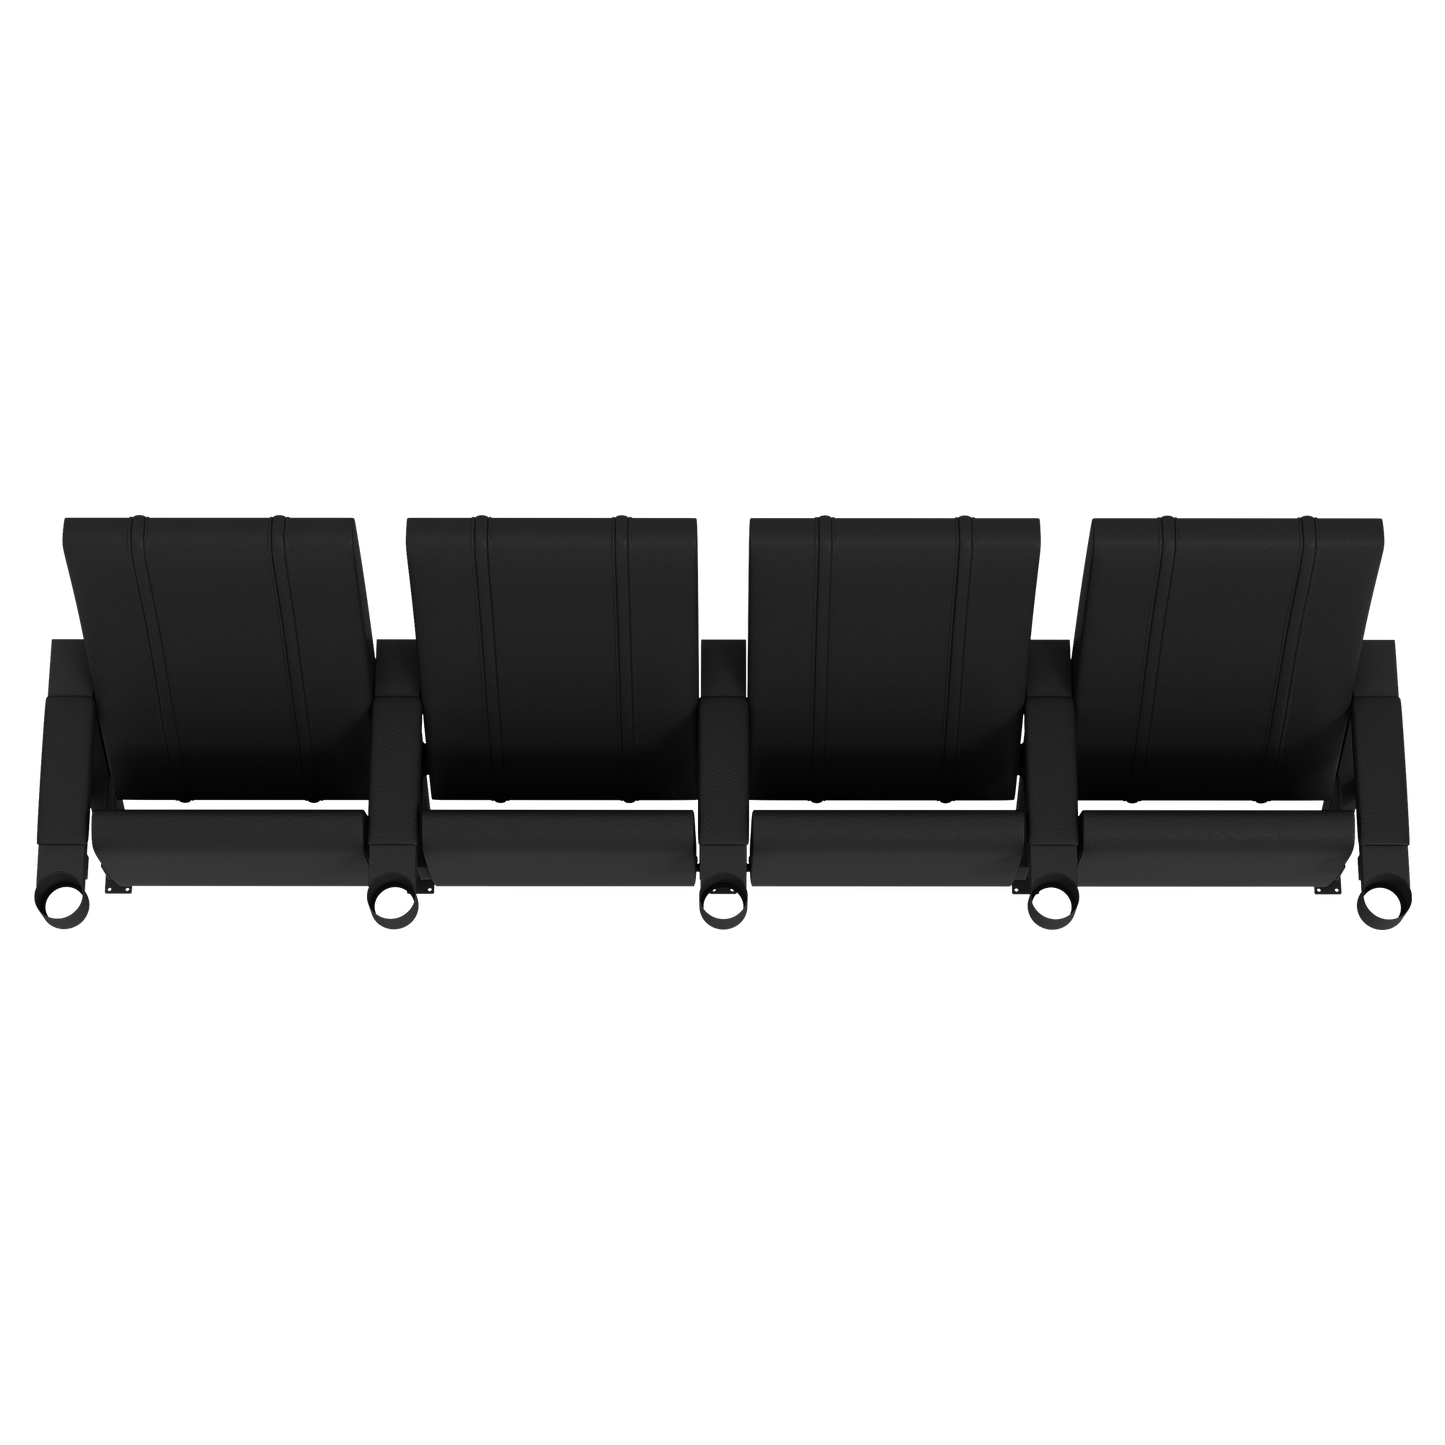 SuiteMax 3.5 VIP Seats with LA Galaxy Logo